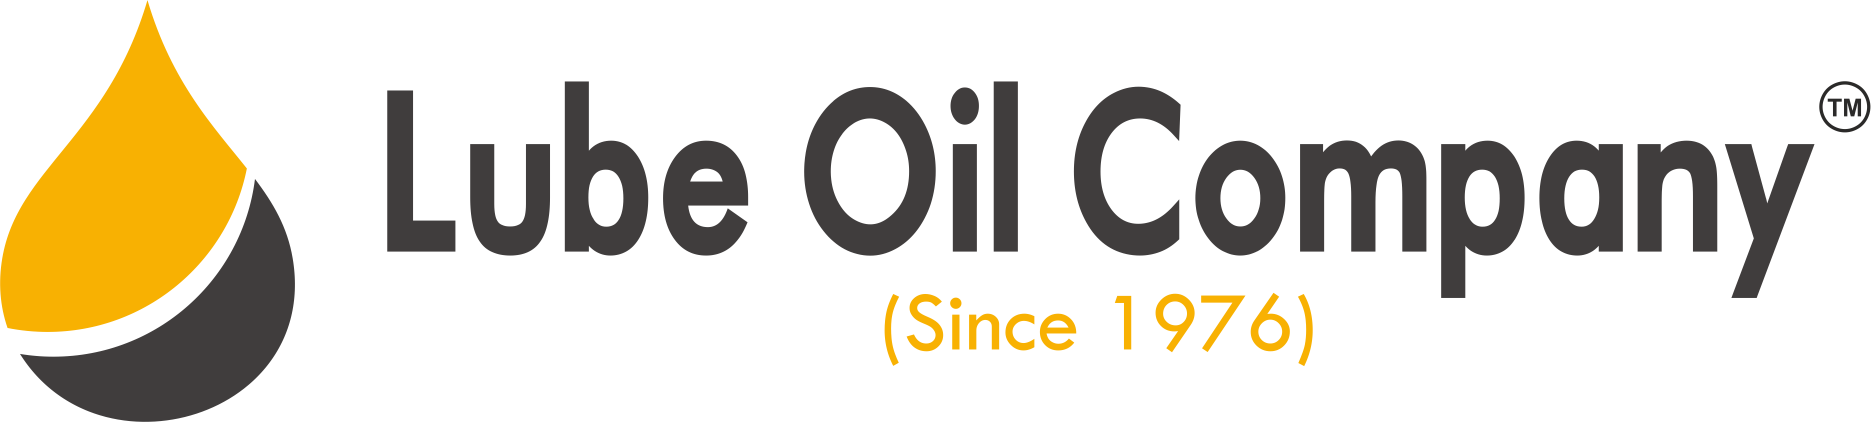 Lube Oil Company